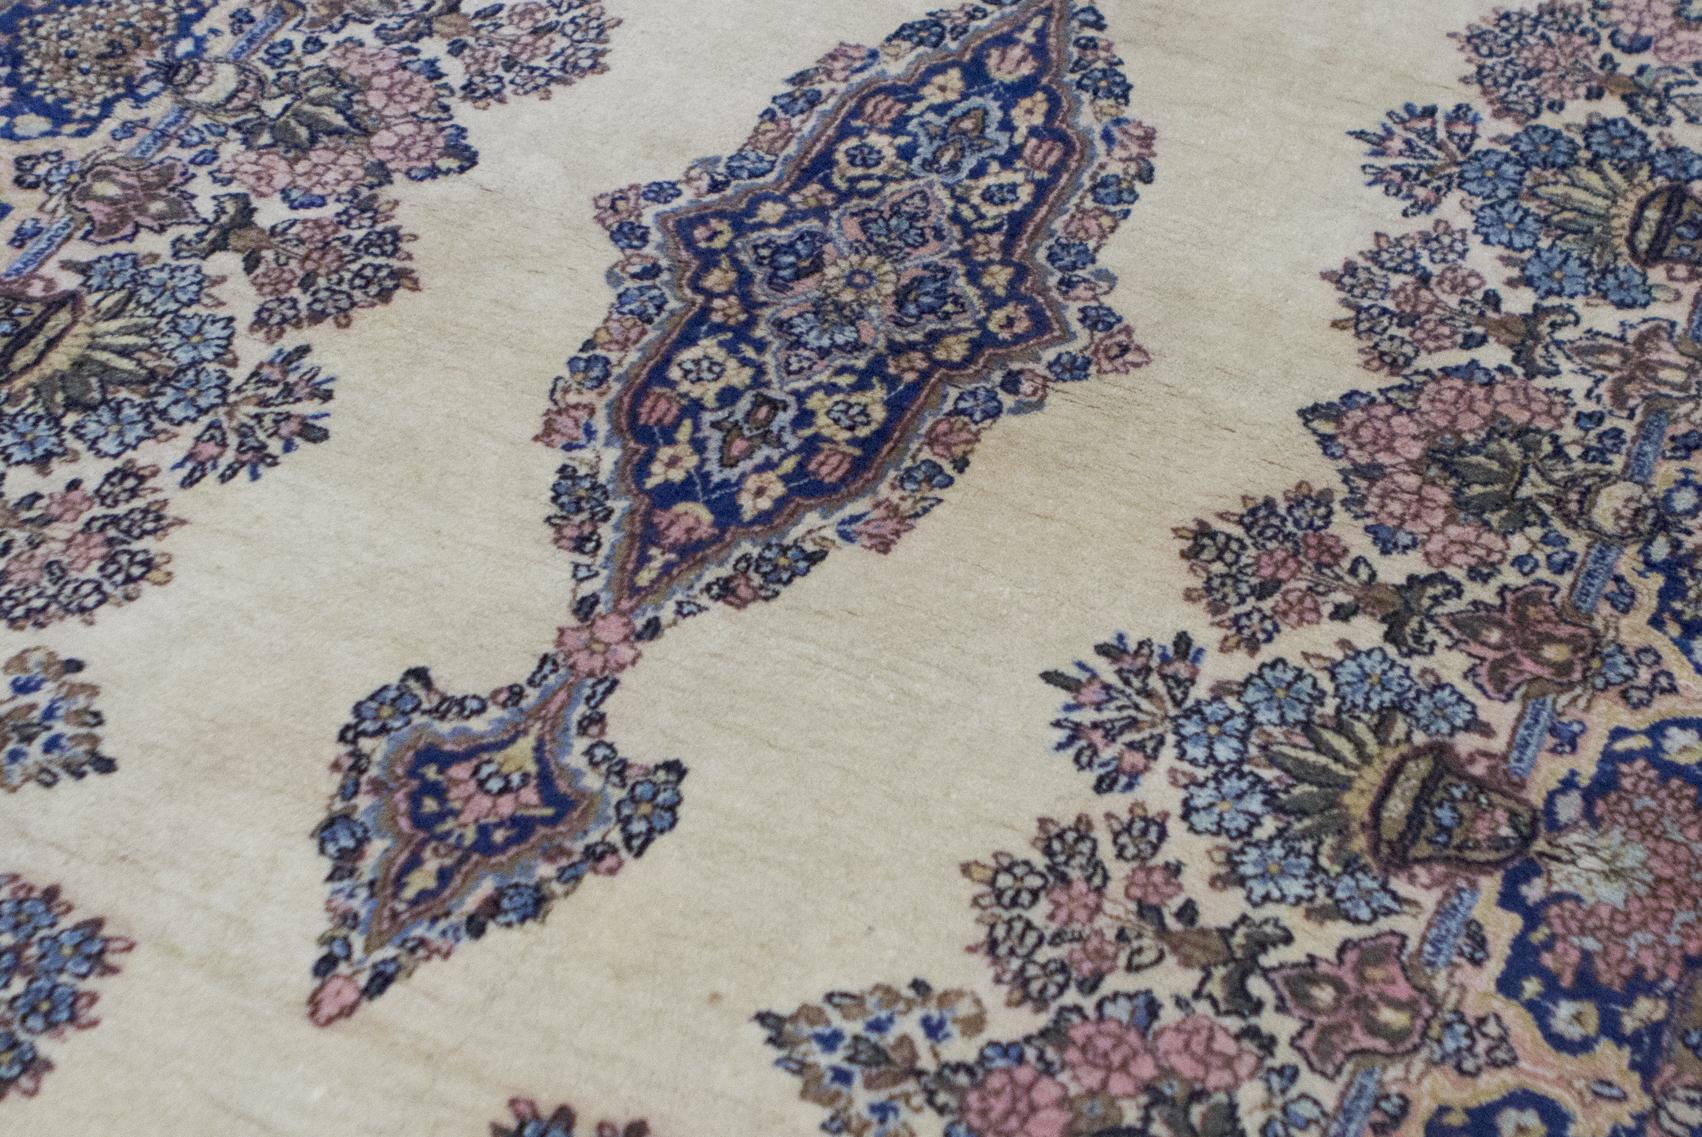 Tapis persan Kerman vintage, circa 1940. Bien que de petite taille, ce tapis vintage Kerman intègre une quantité énorme de détails dans la composition avec les éléments floraux répétés dans le médaillon et les bordures environnantes, le champ ivoire